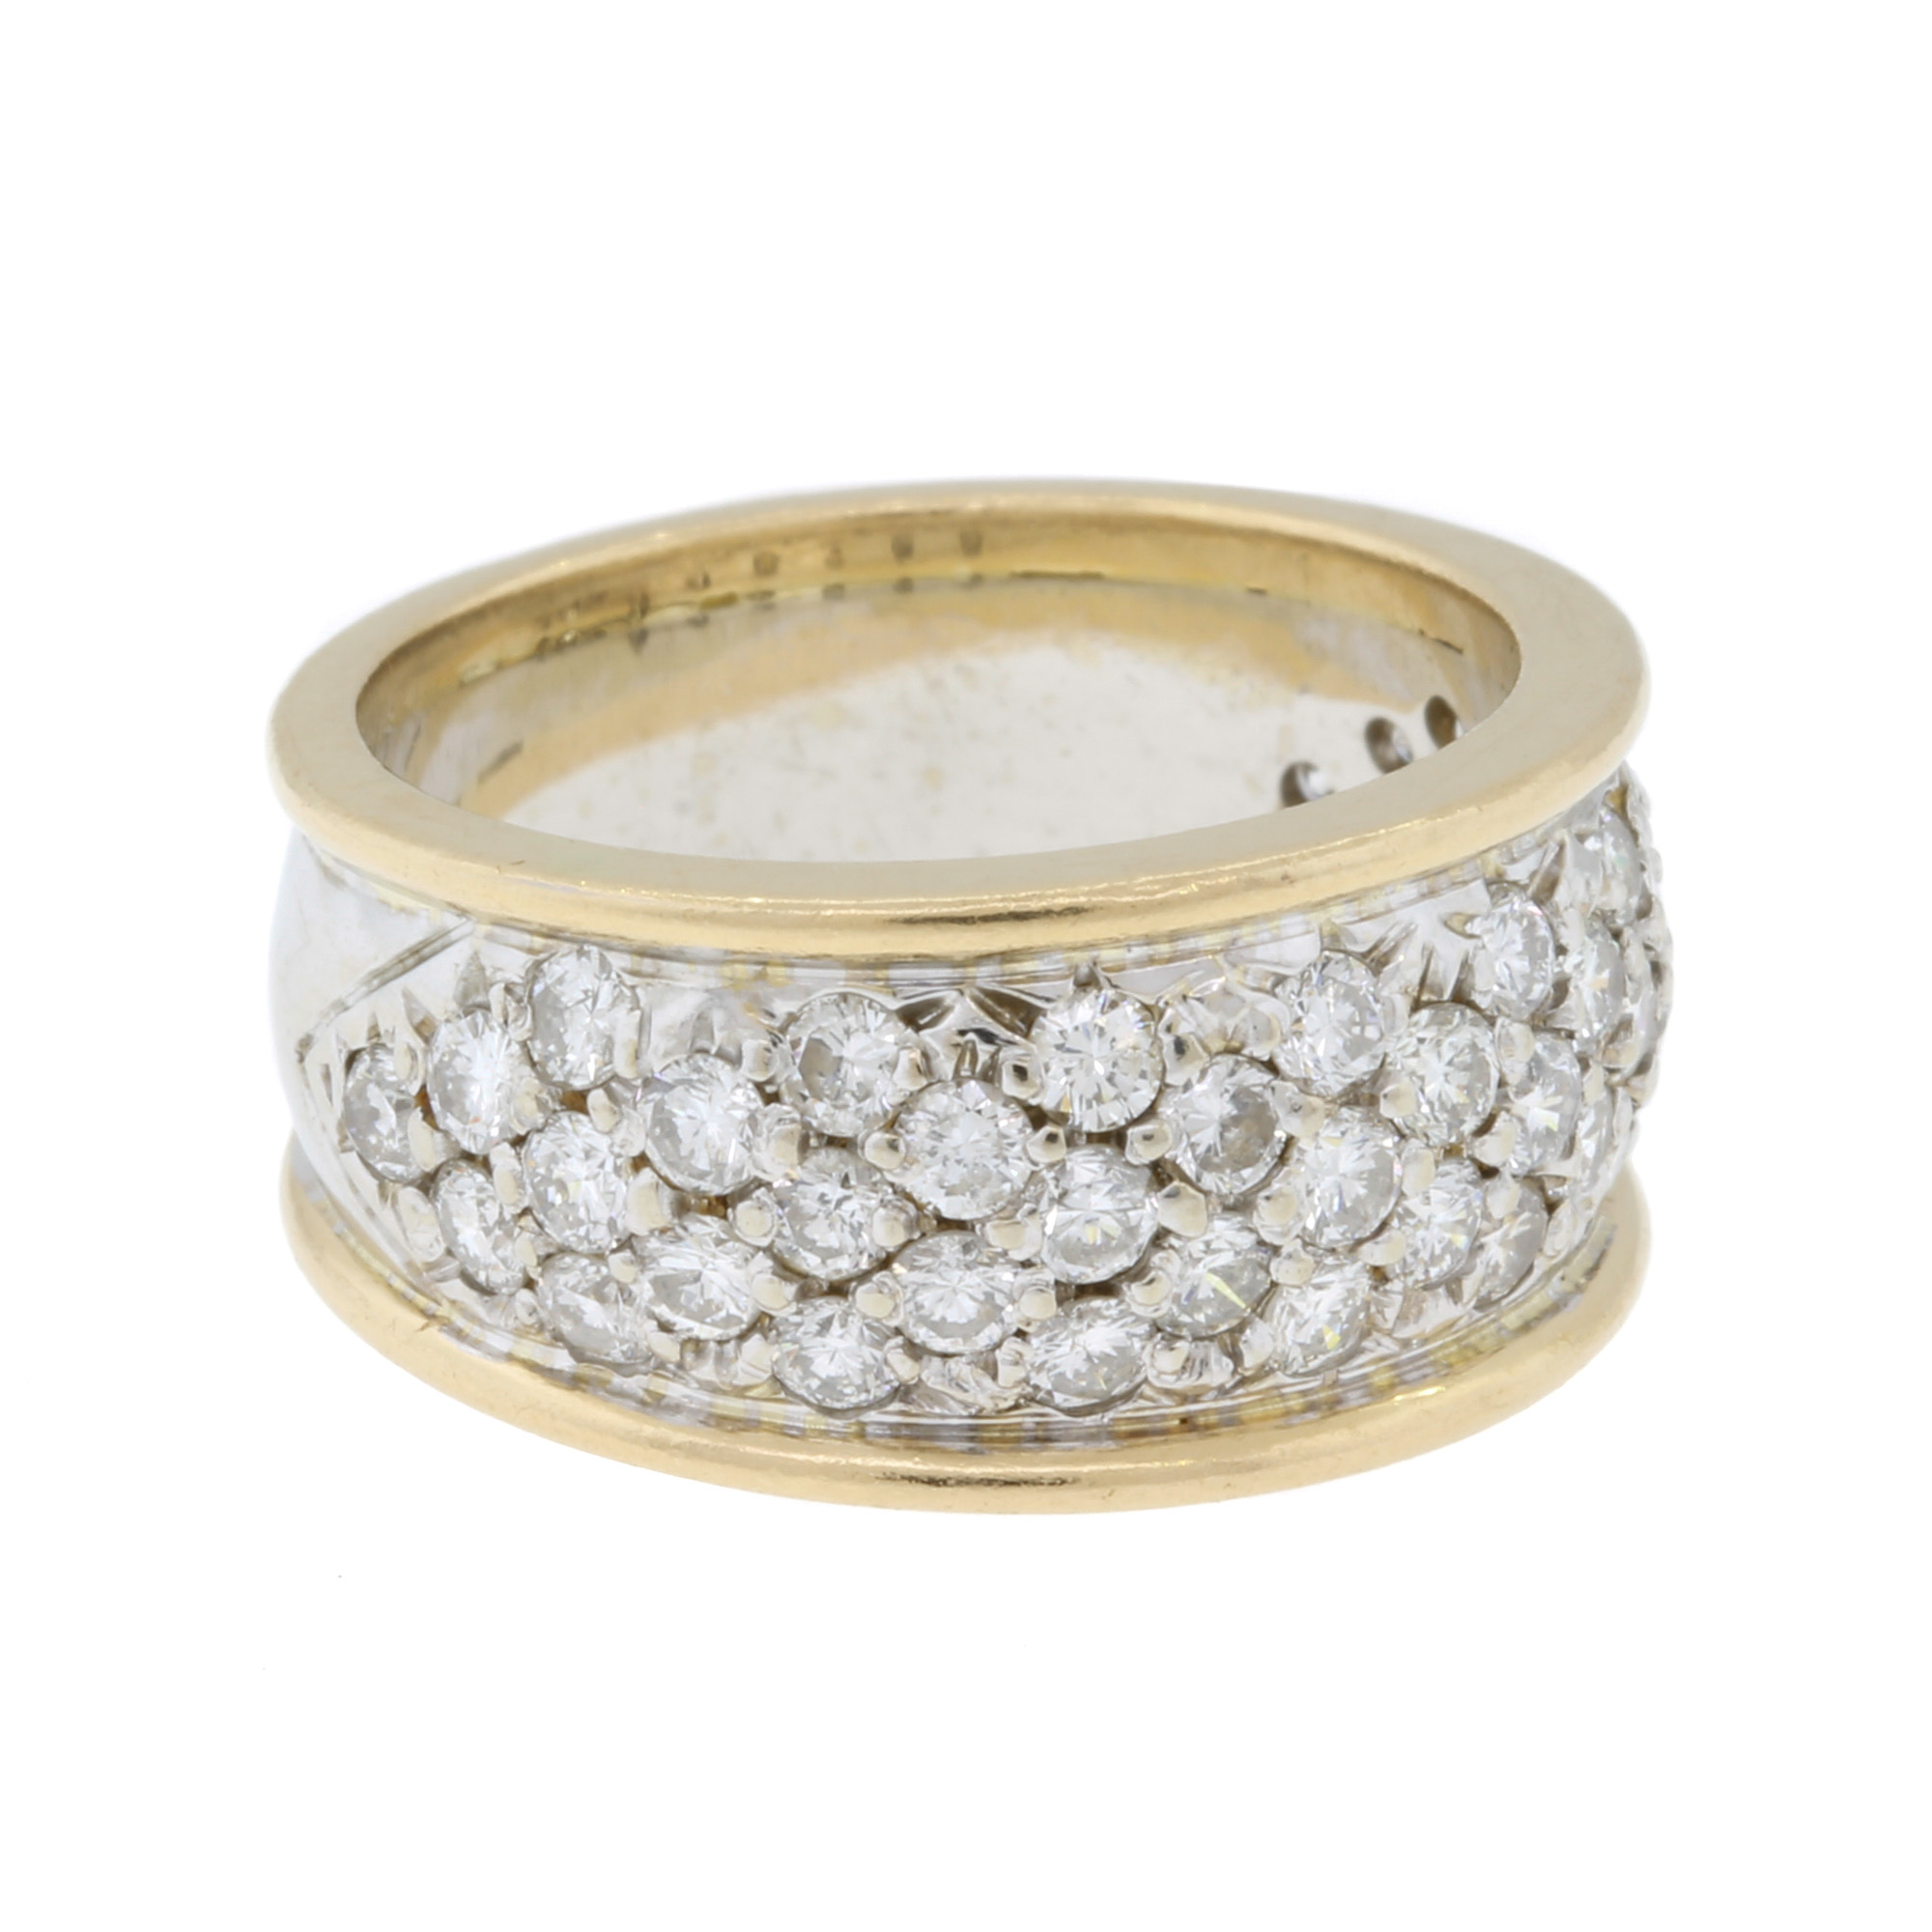 Vintage 14k Gold Diamond Cluster Wide Band Ring Sz 6 Signed | eBay